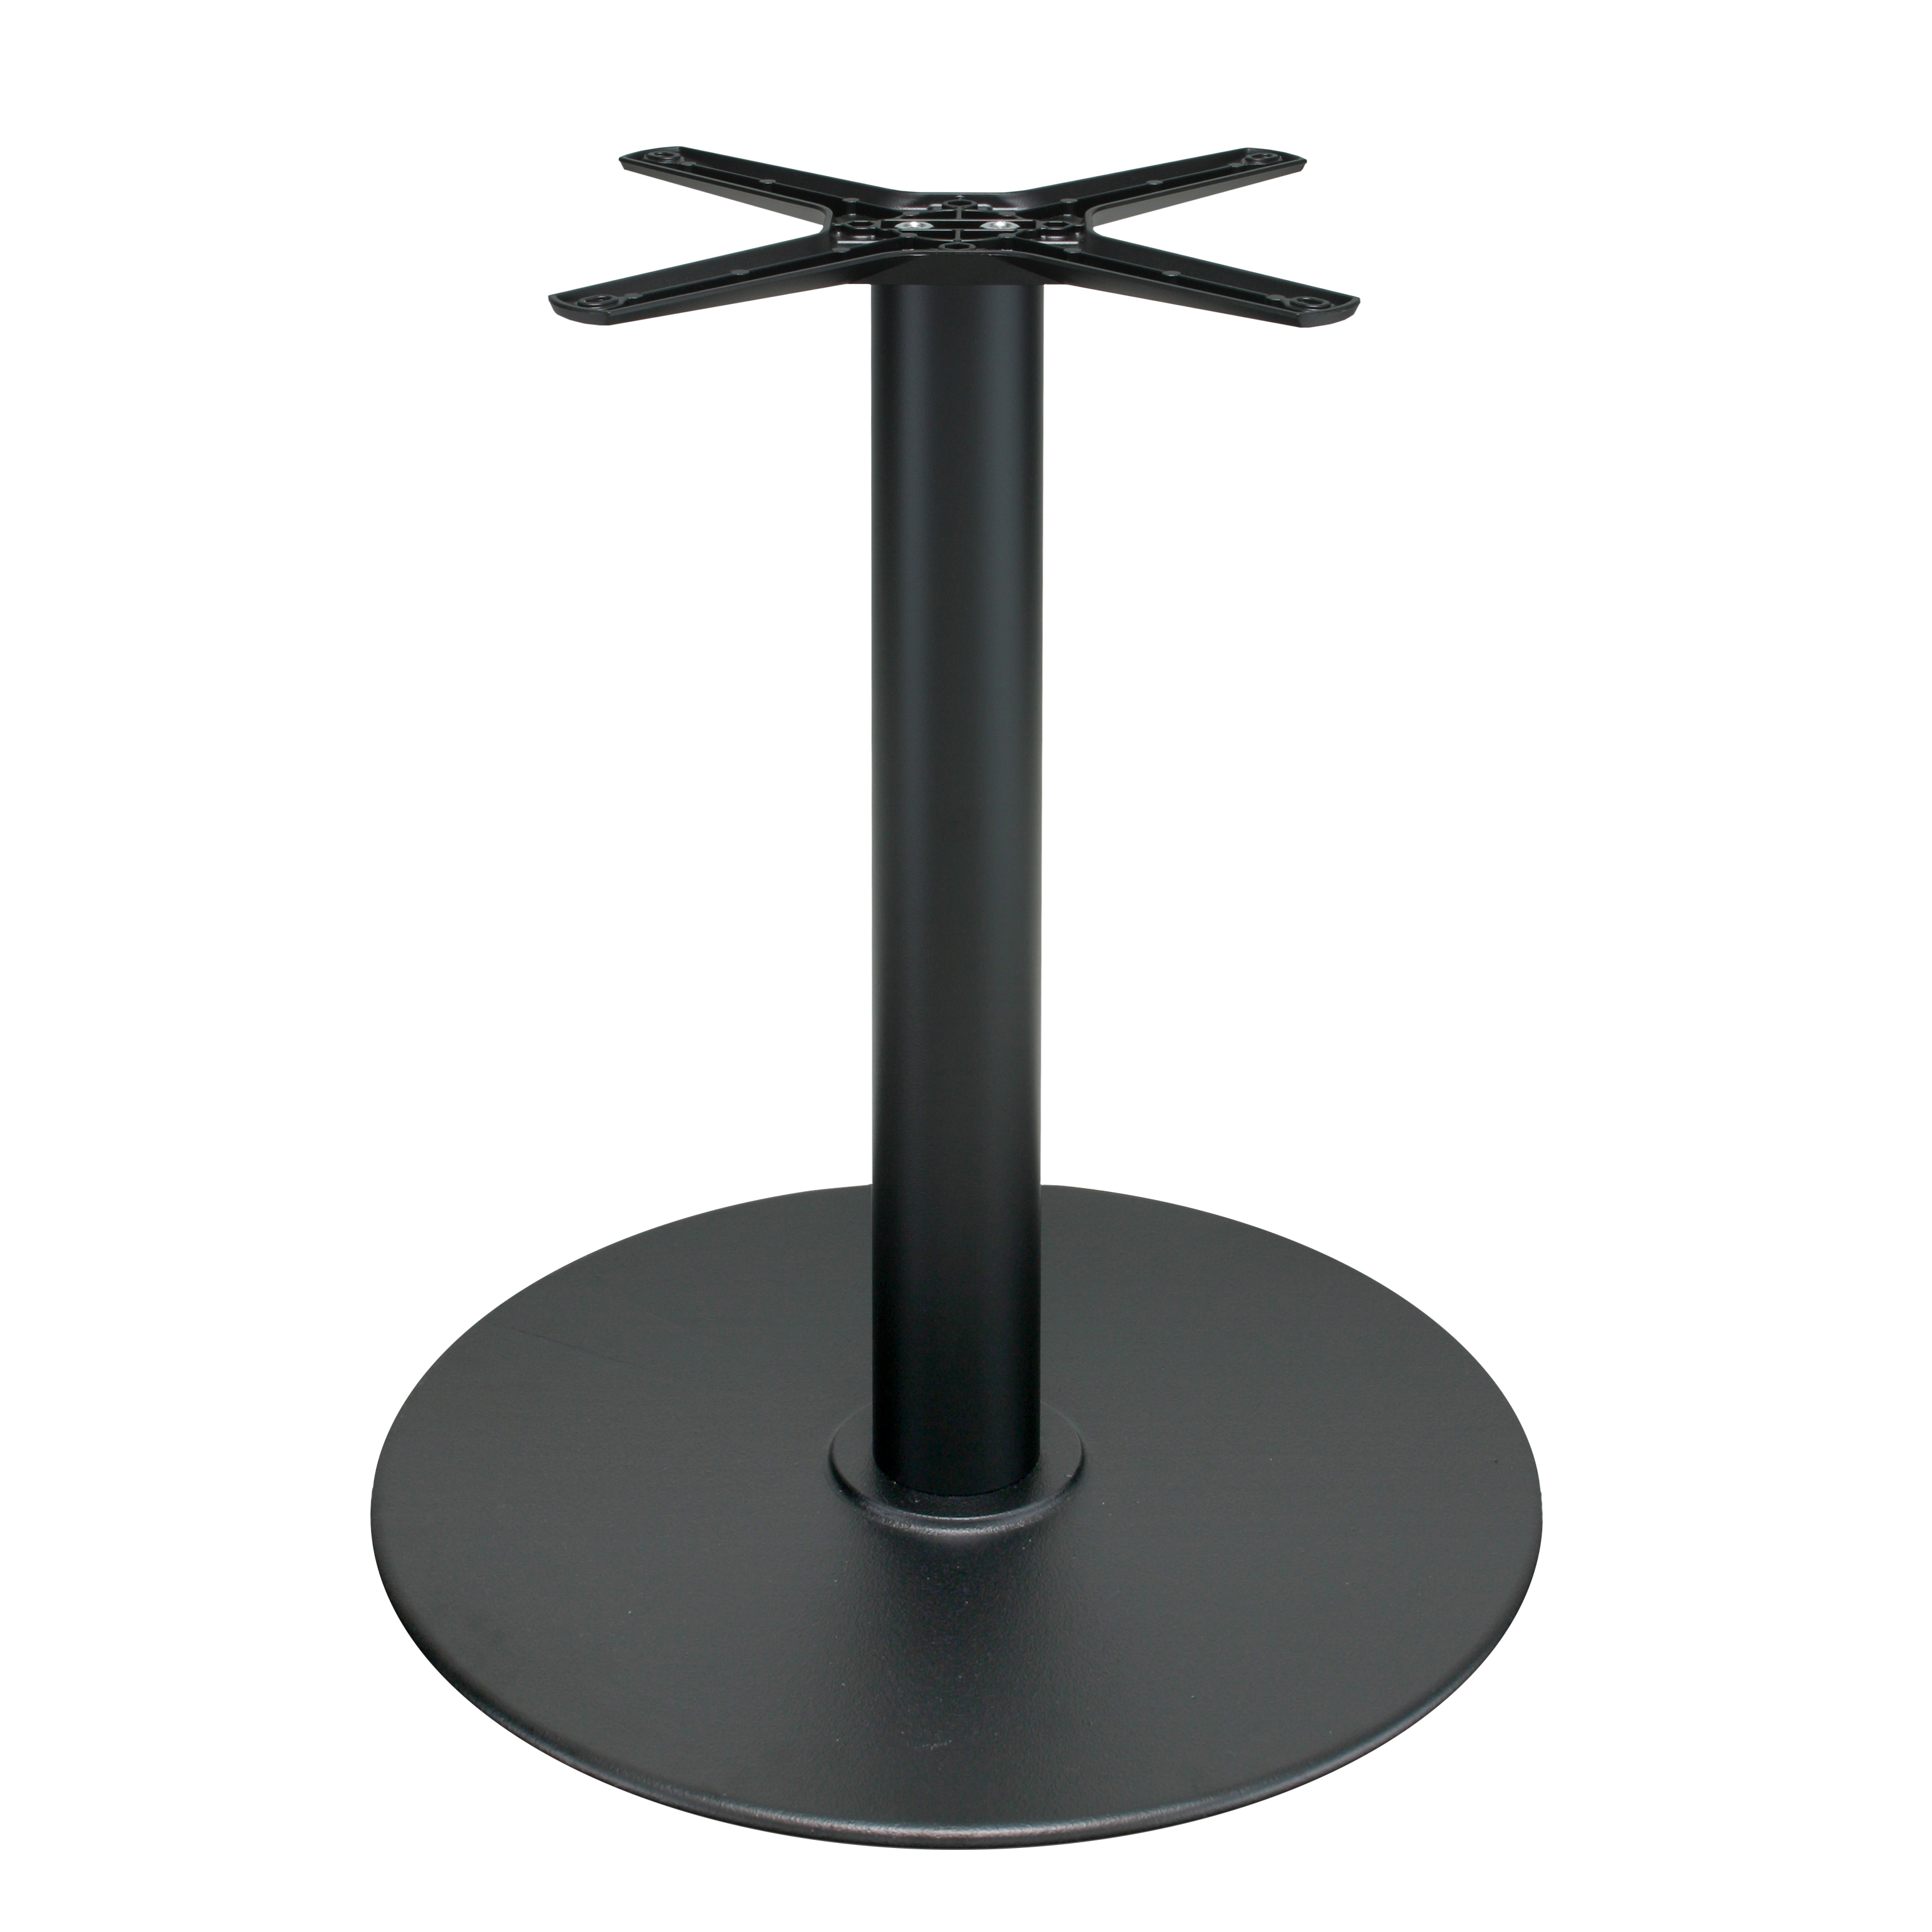 Tischgestell P111 aus Gusseisen, pulverbeschichtet schwarz, rund